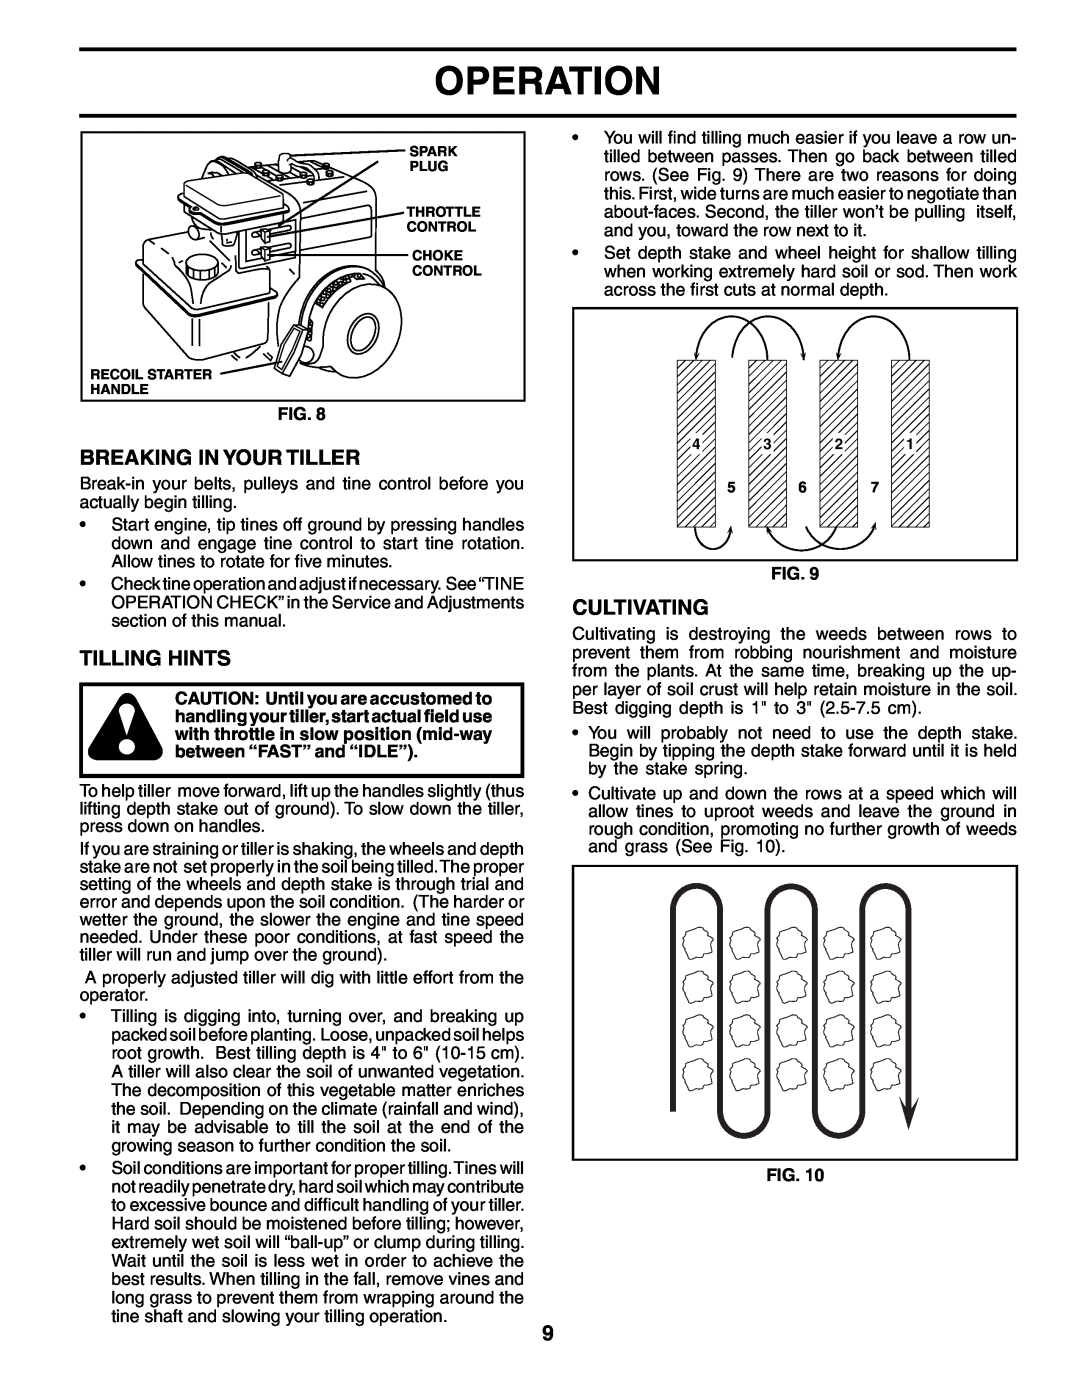 Electrolux FN620K owner manual Breaking In Your Tiller, Tilling Hints, Cultivating, Operation 